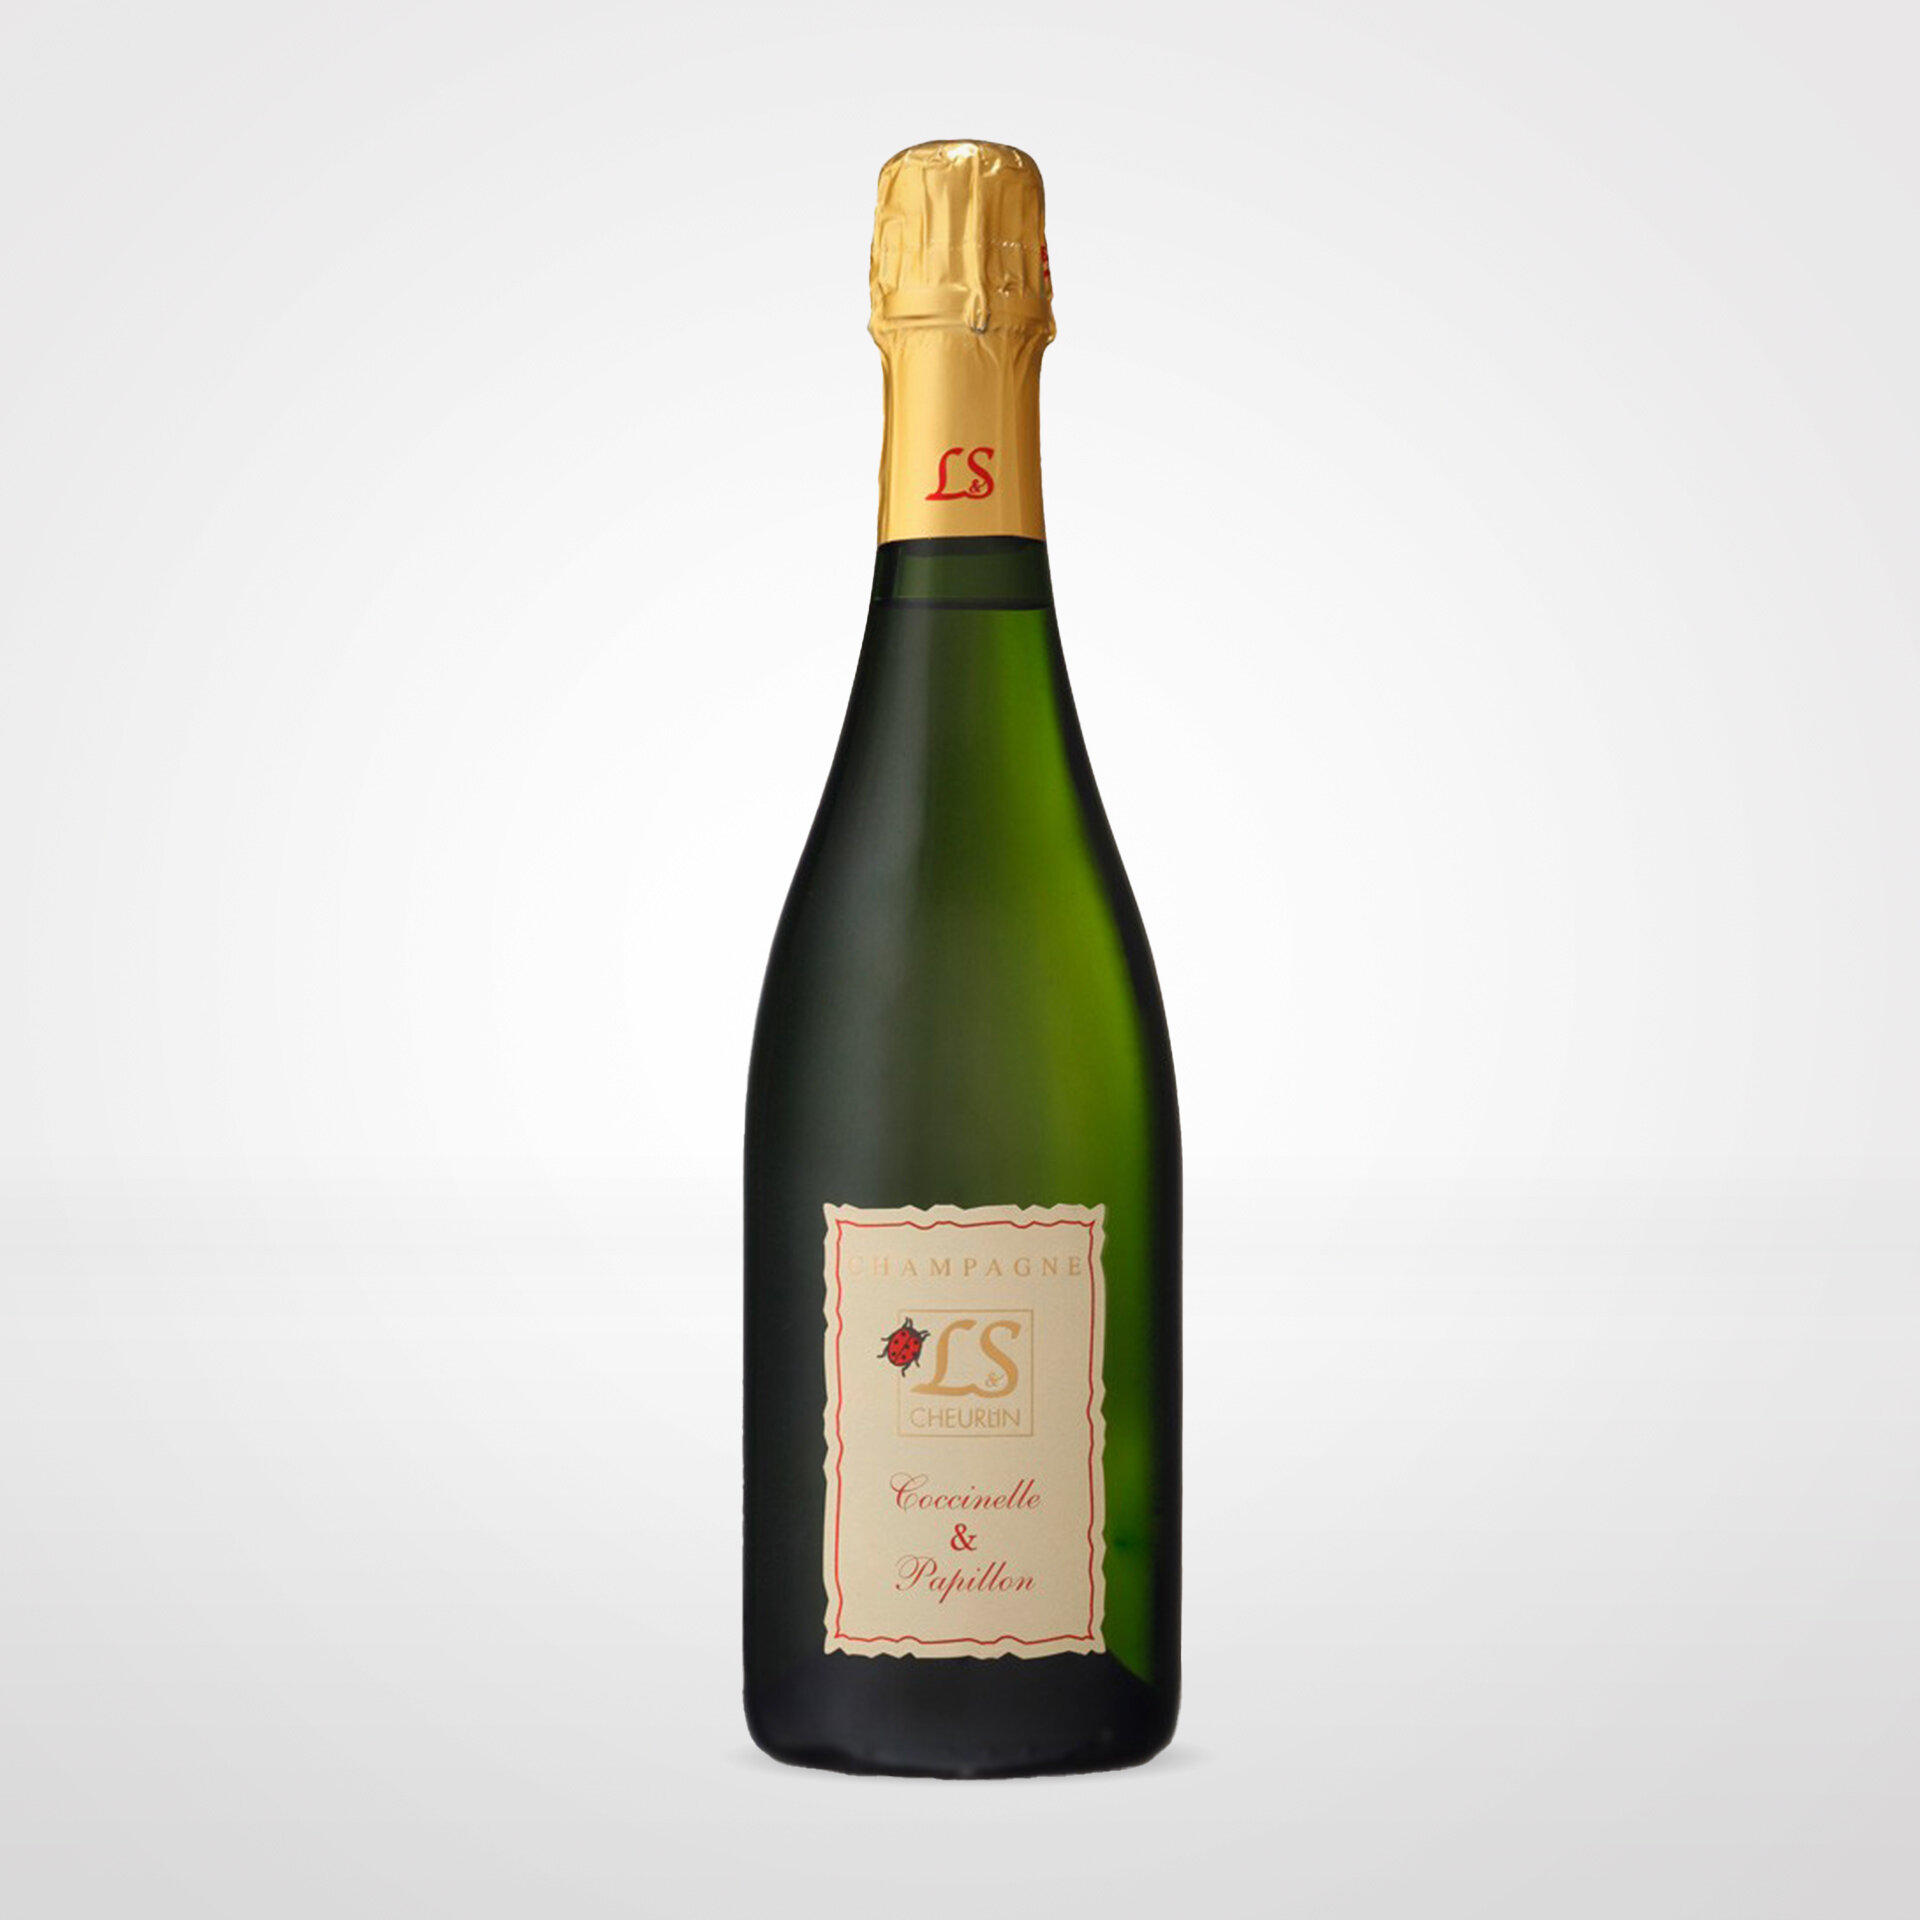 Champagne Brut Coccinelle & Papillon bio